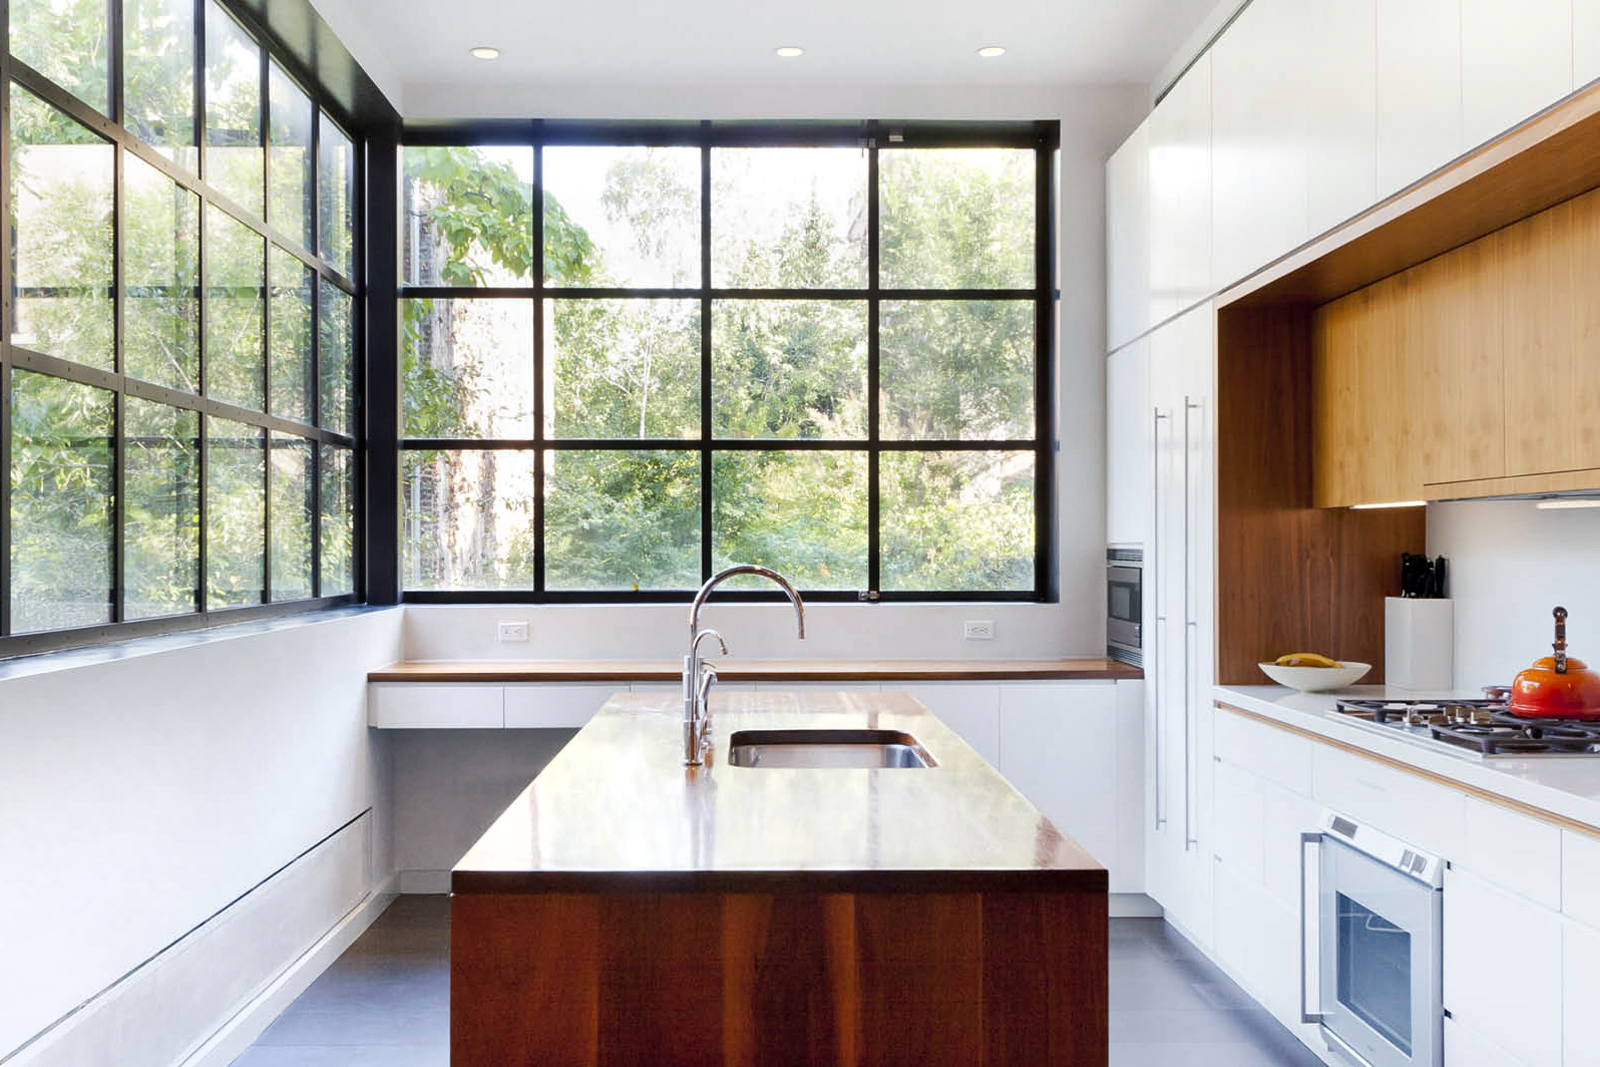 01-res4-resolution-4-architecture-modern-residential-warren-street-townhouse-interior-kitchen.jpg